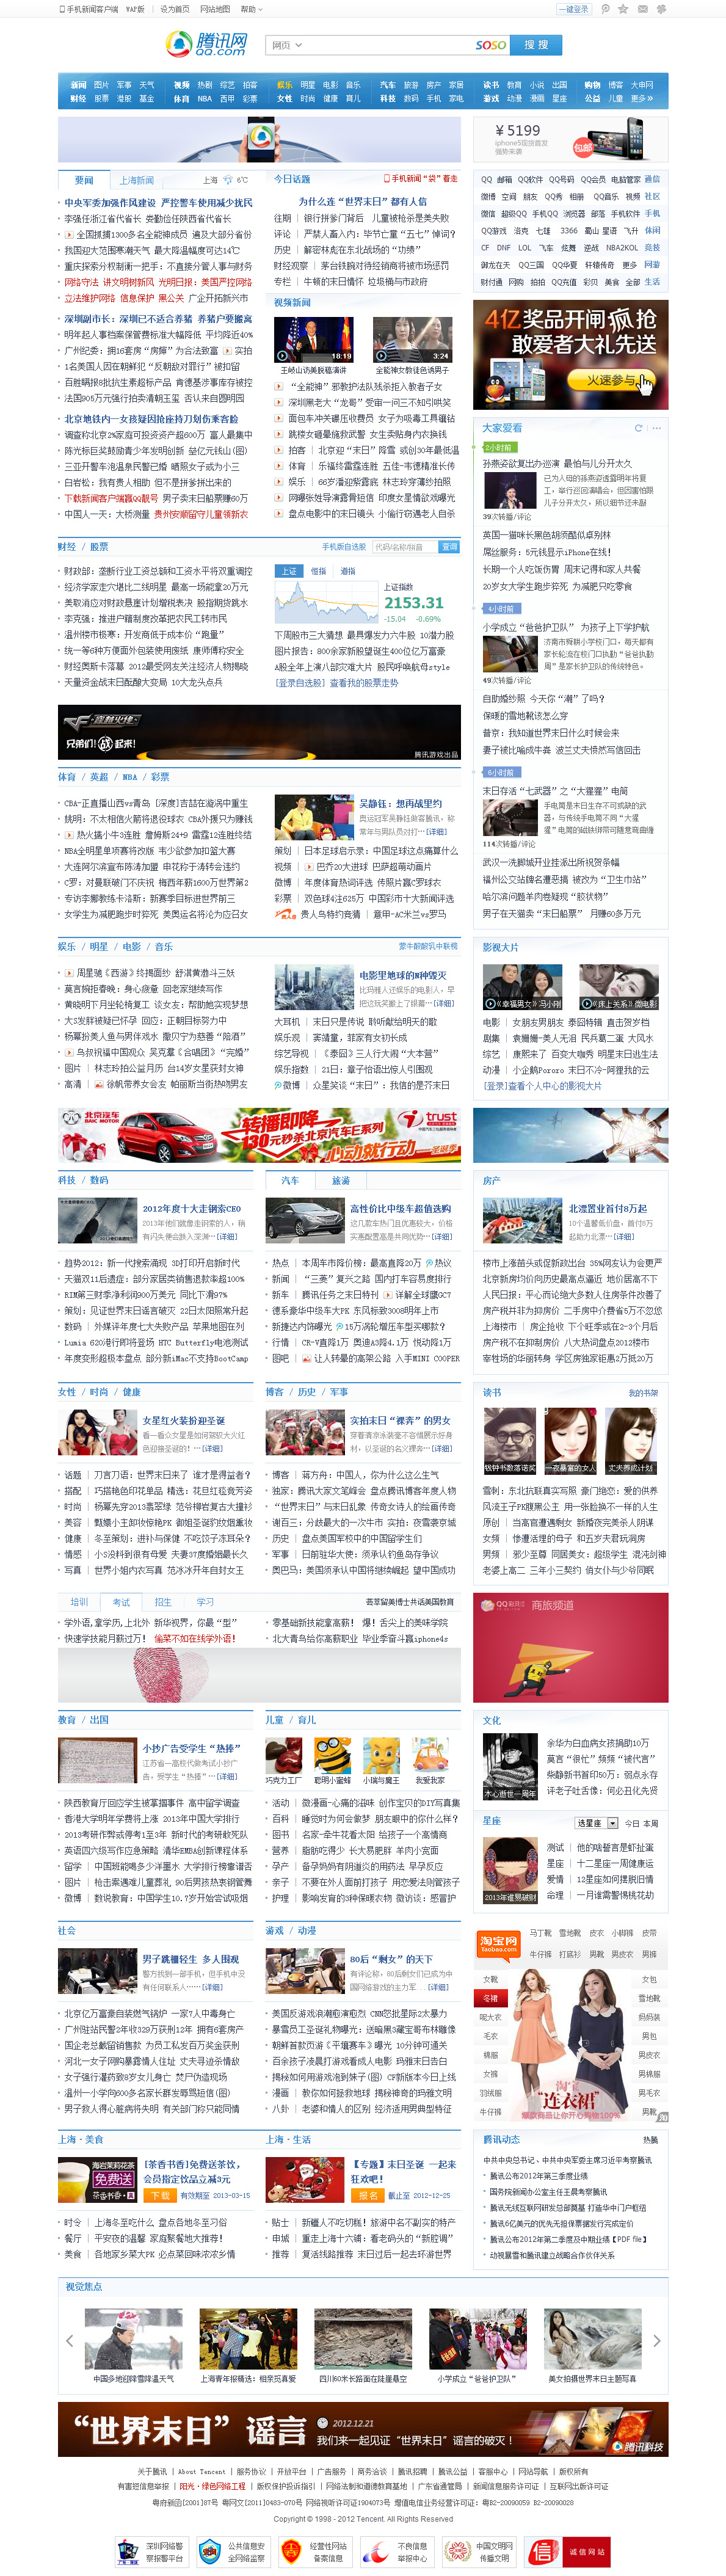 腾讯网是中国浏览量最大的中文门户网站，是腾讯公司推出的集新闻信息、互动社区、娱乐产品和基础服务为一体的大型综合门户网站。